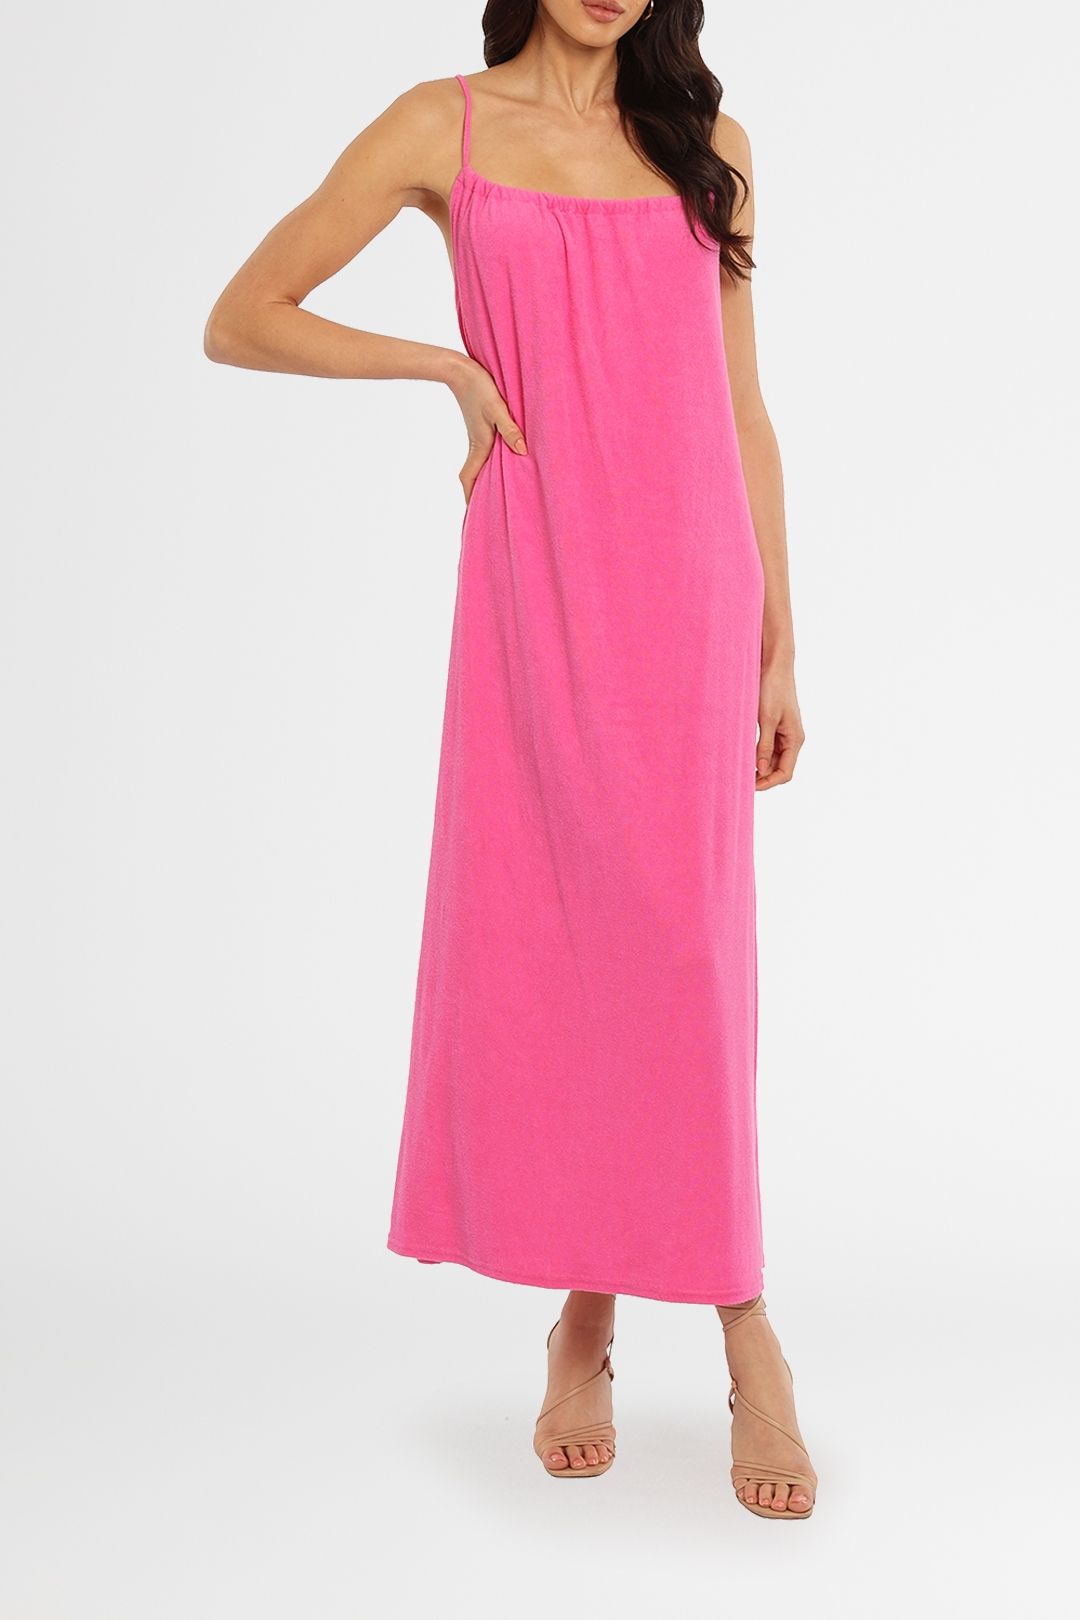 Blanca Sisco Dress Pink